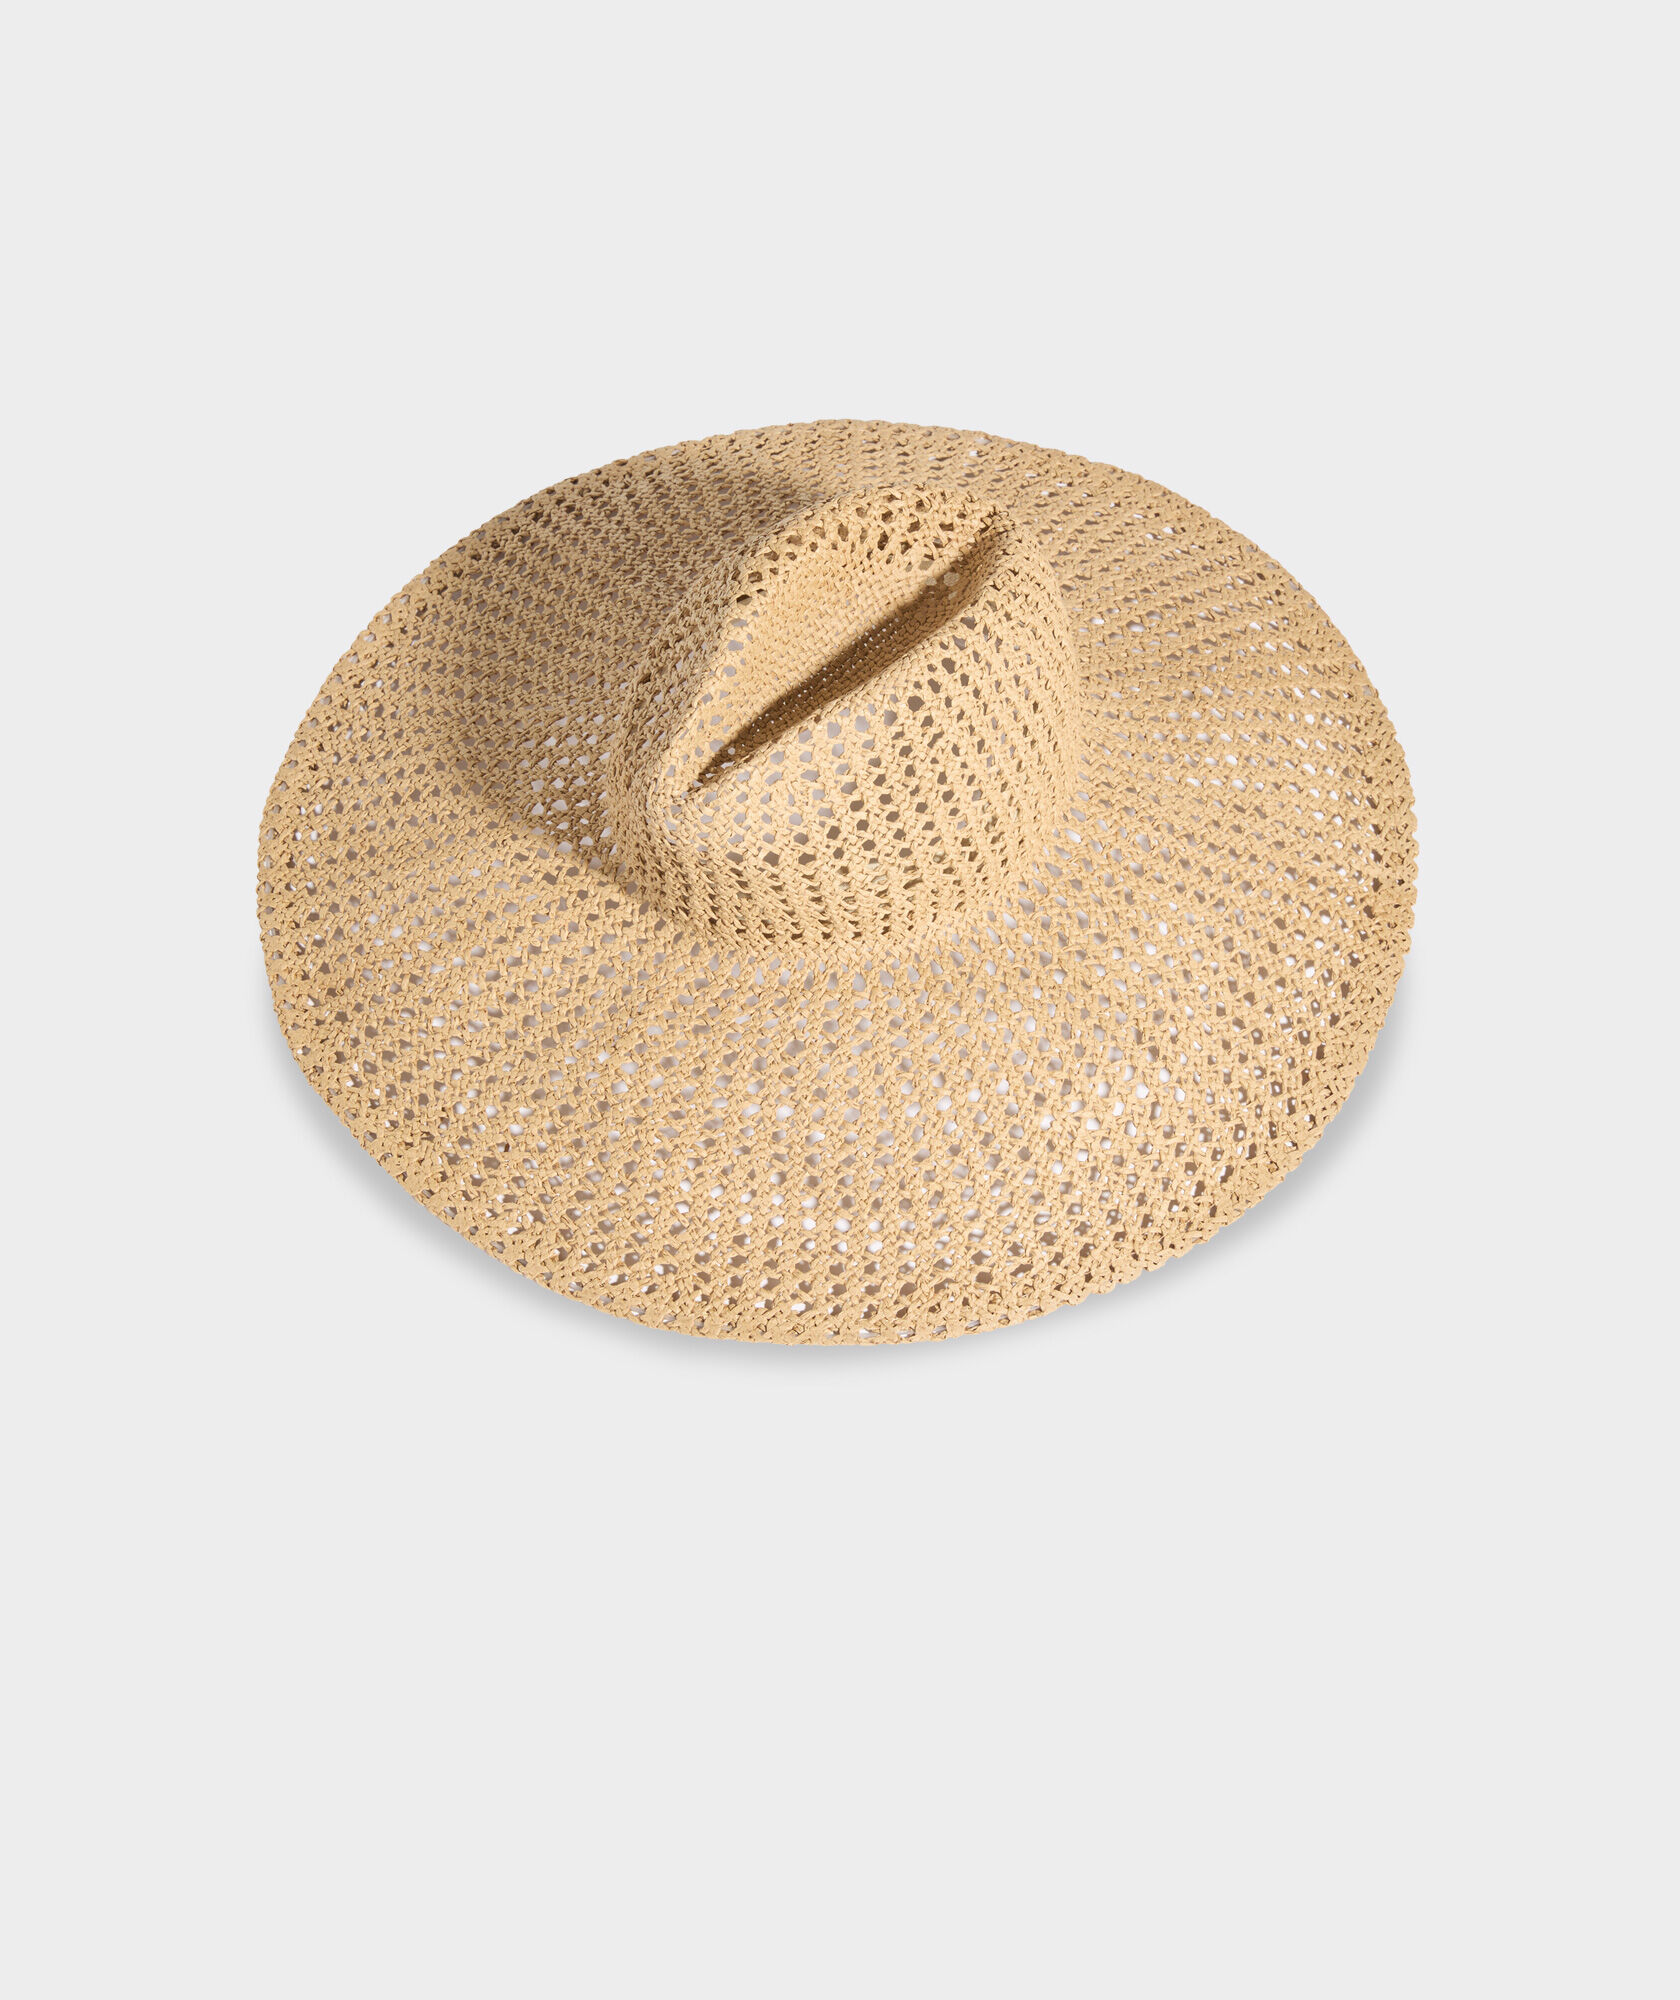 Cane Woven Sun Hat